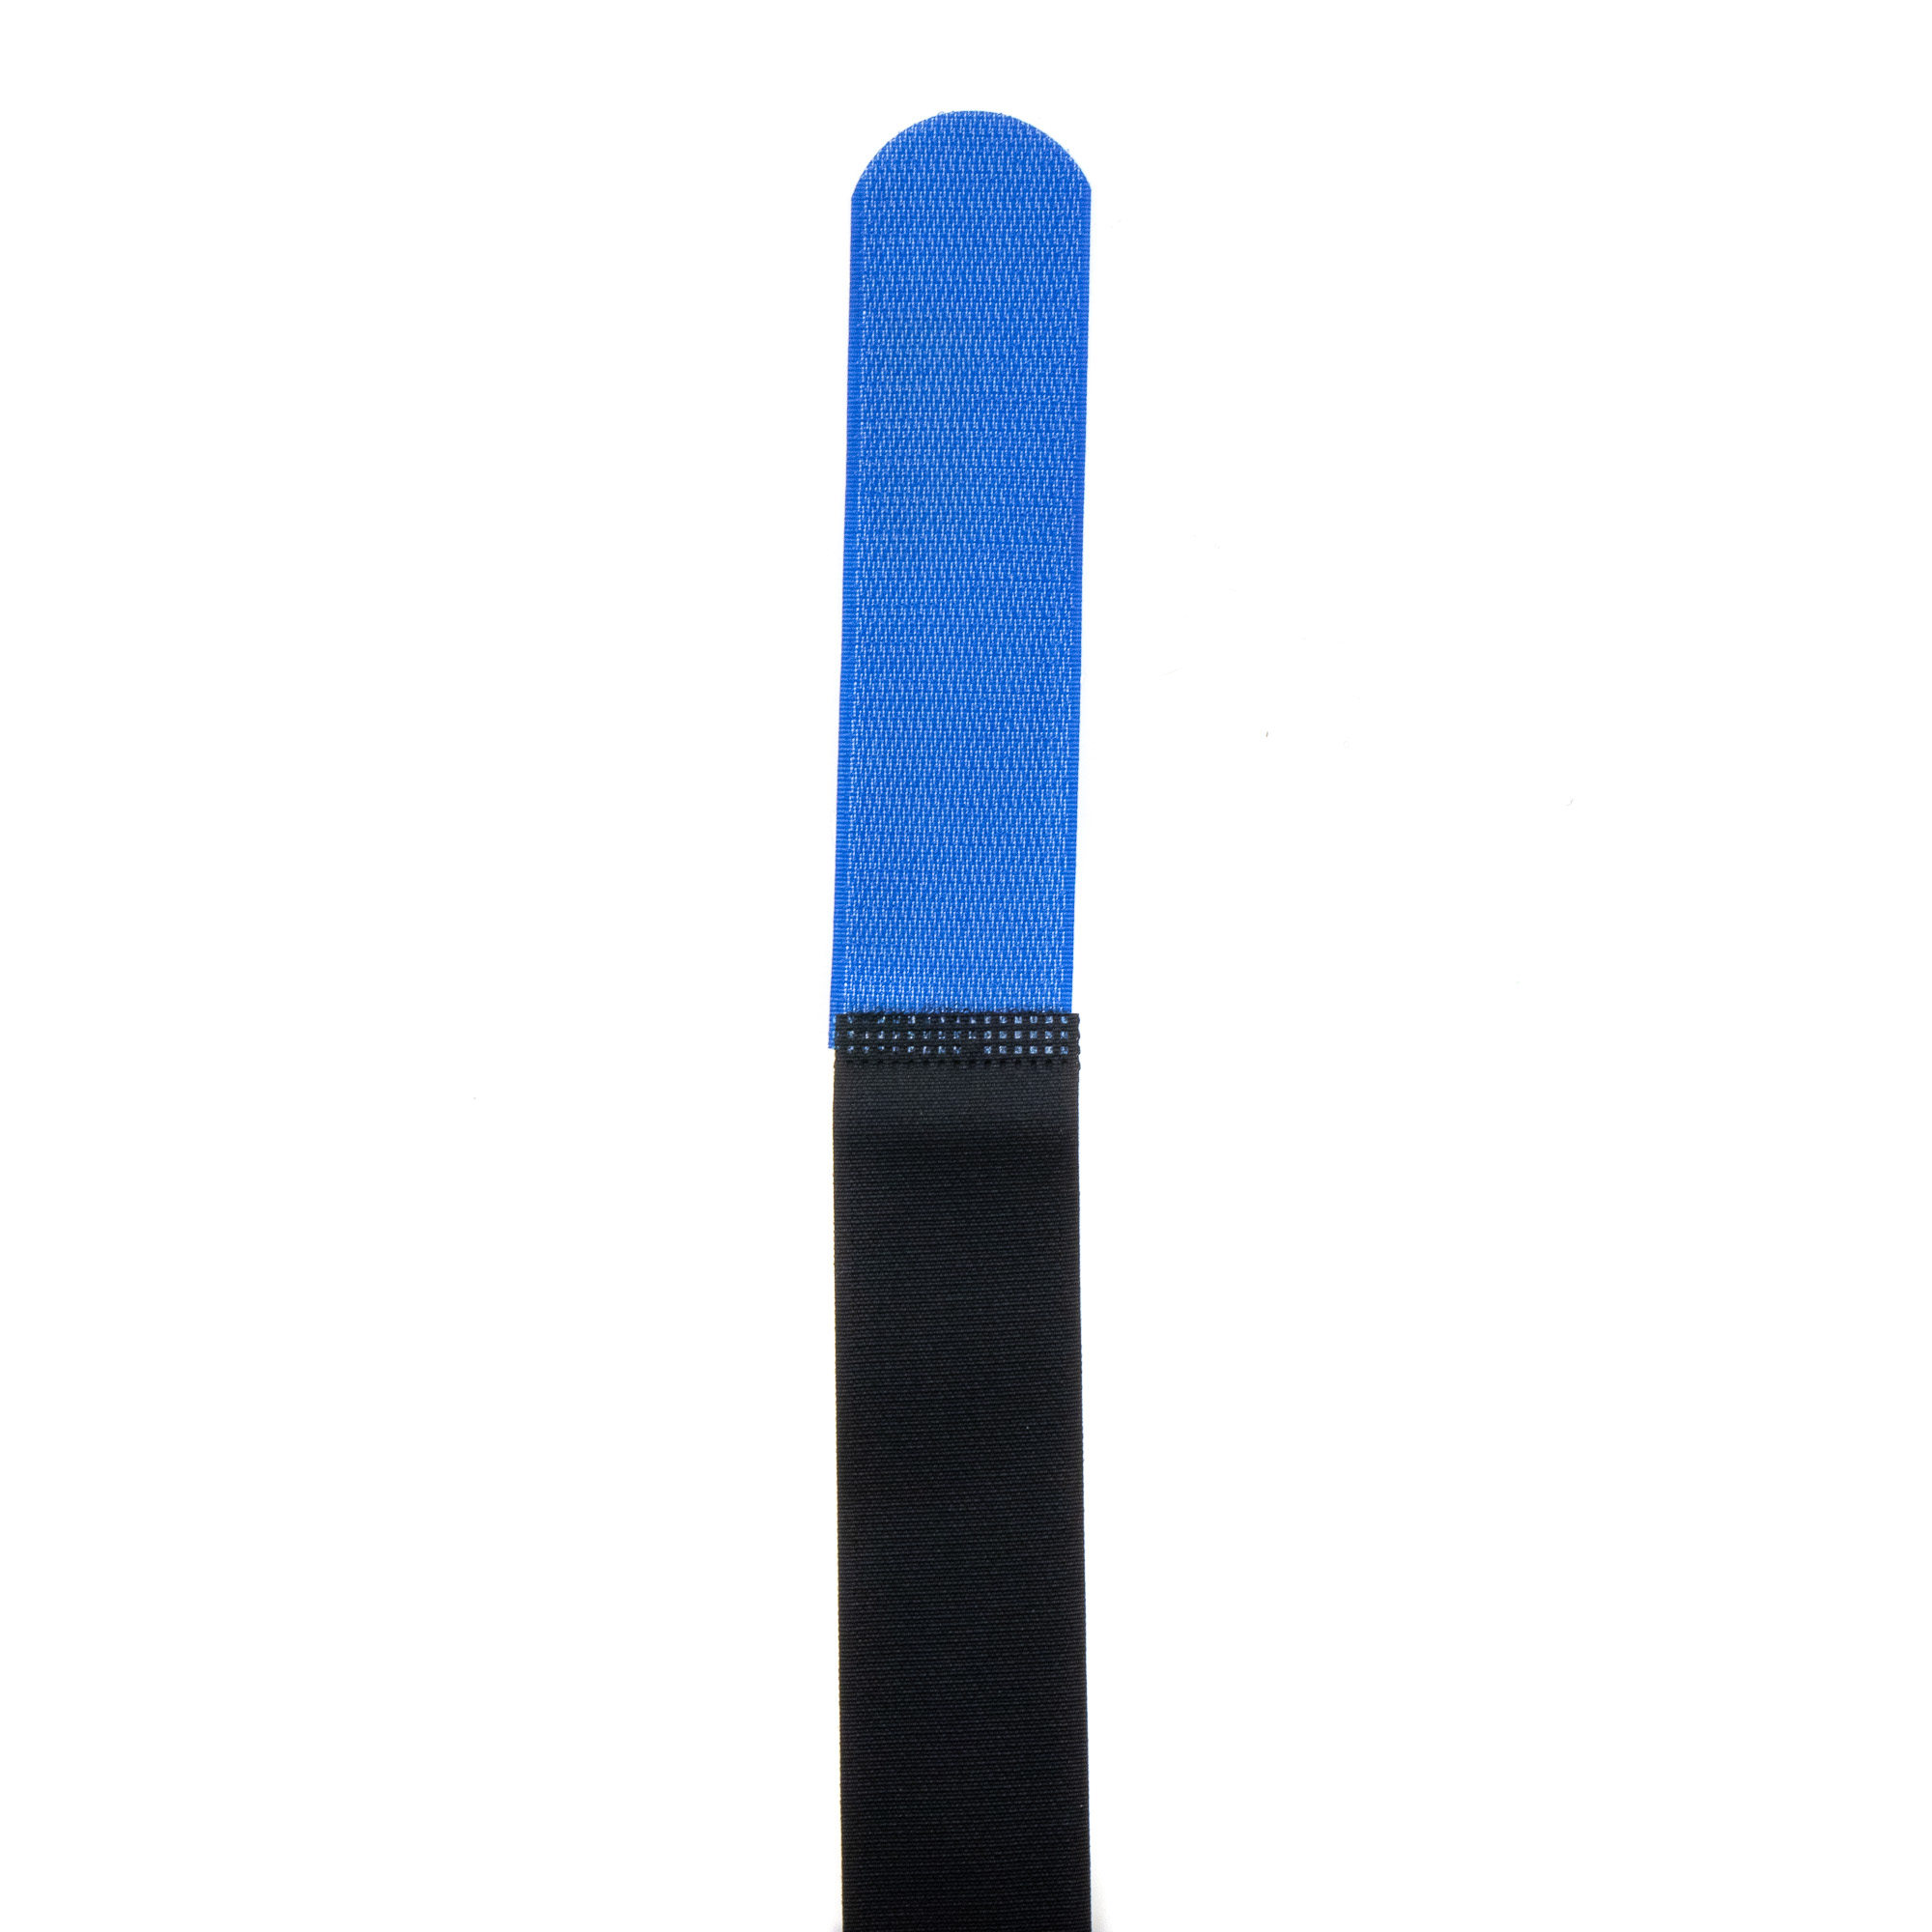 Hook-and-loop strap 600x38, black/blue, crossed, 10PCS